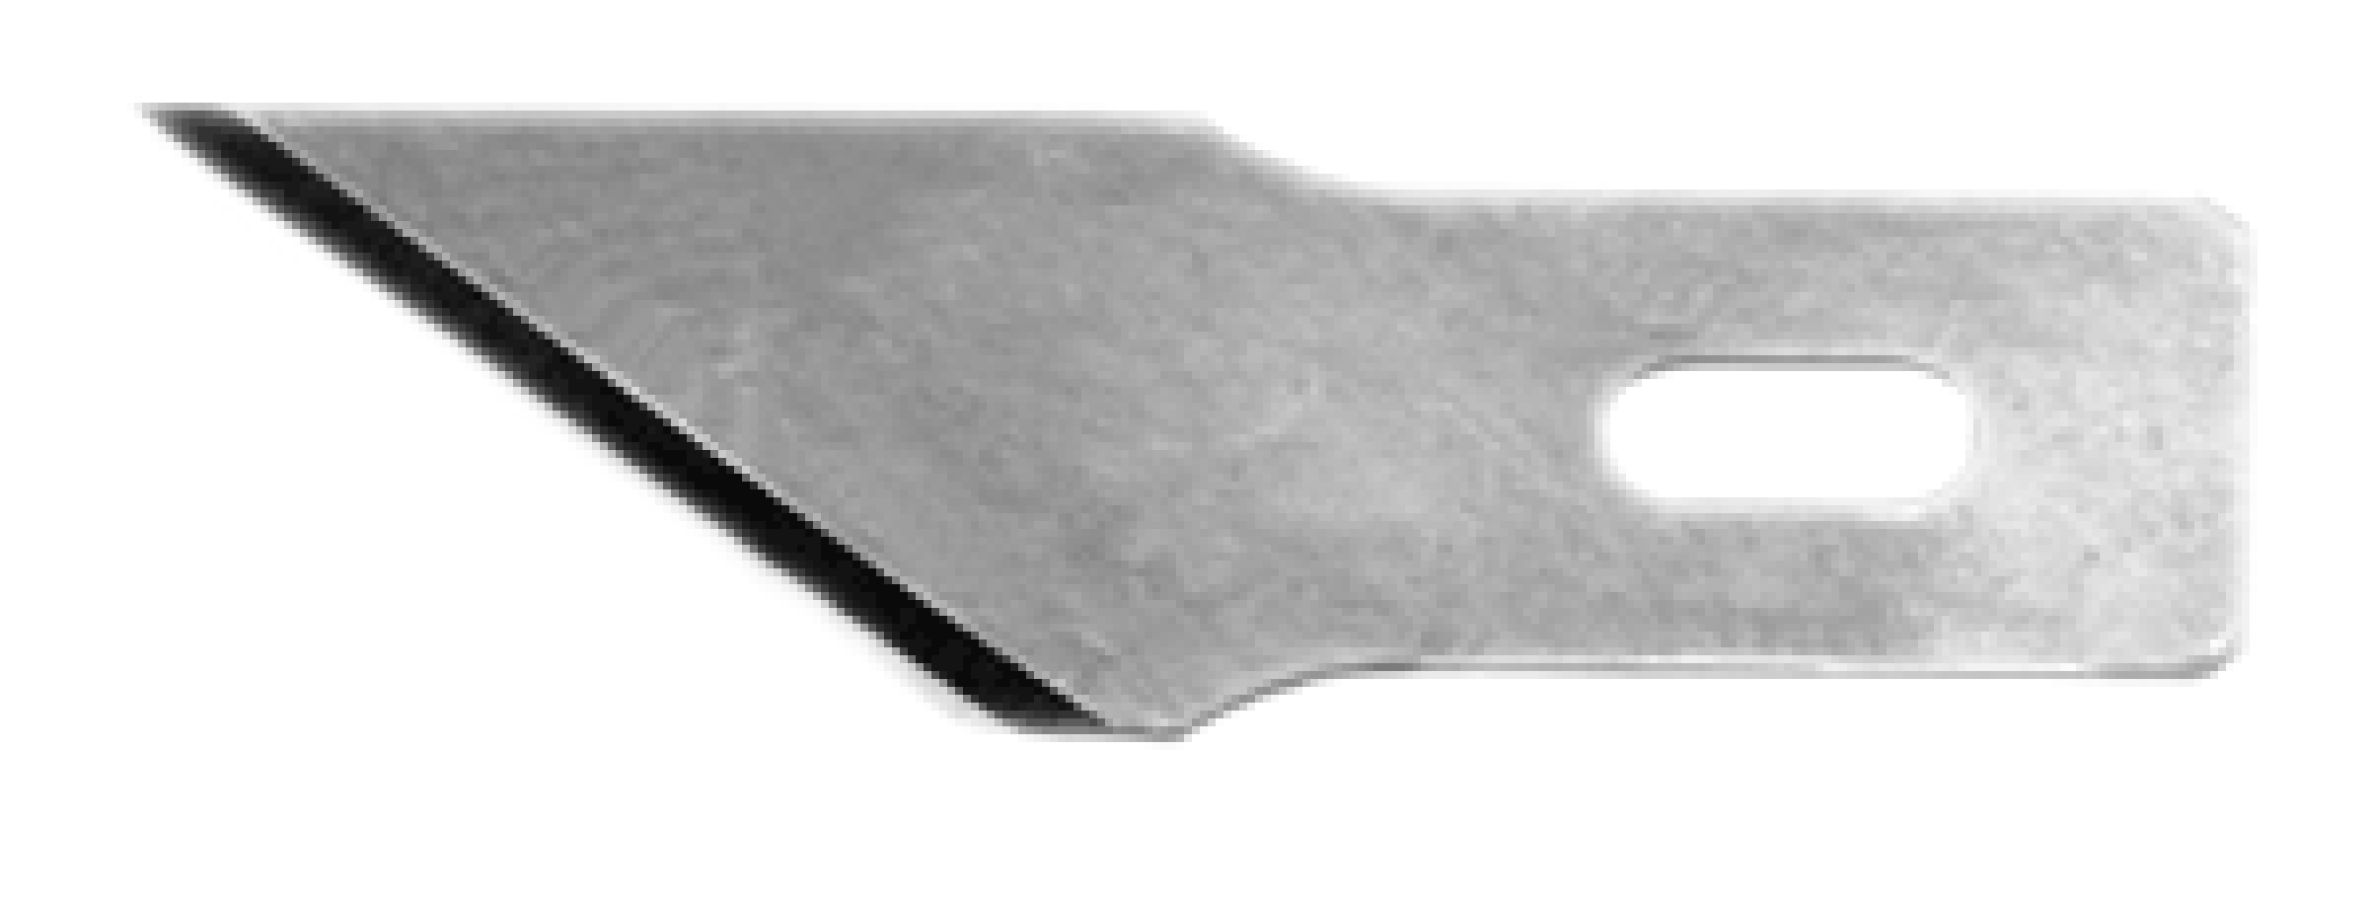  лезвия для ножа XN-200 (5 шт.) цена,  XC-XNB-205 в .